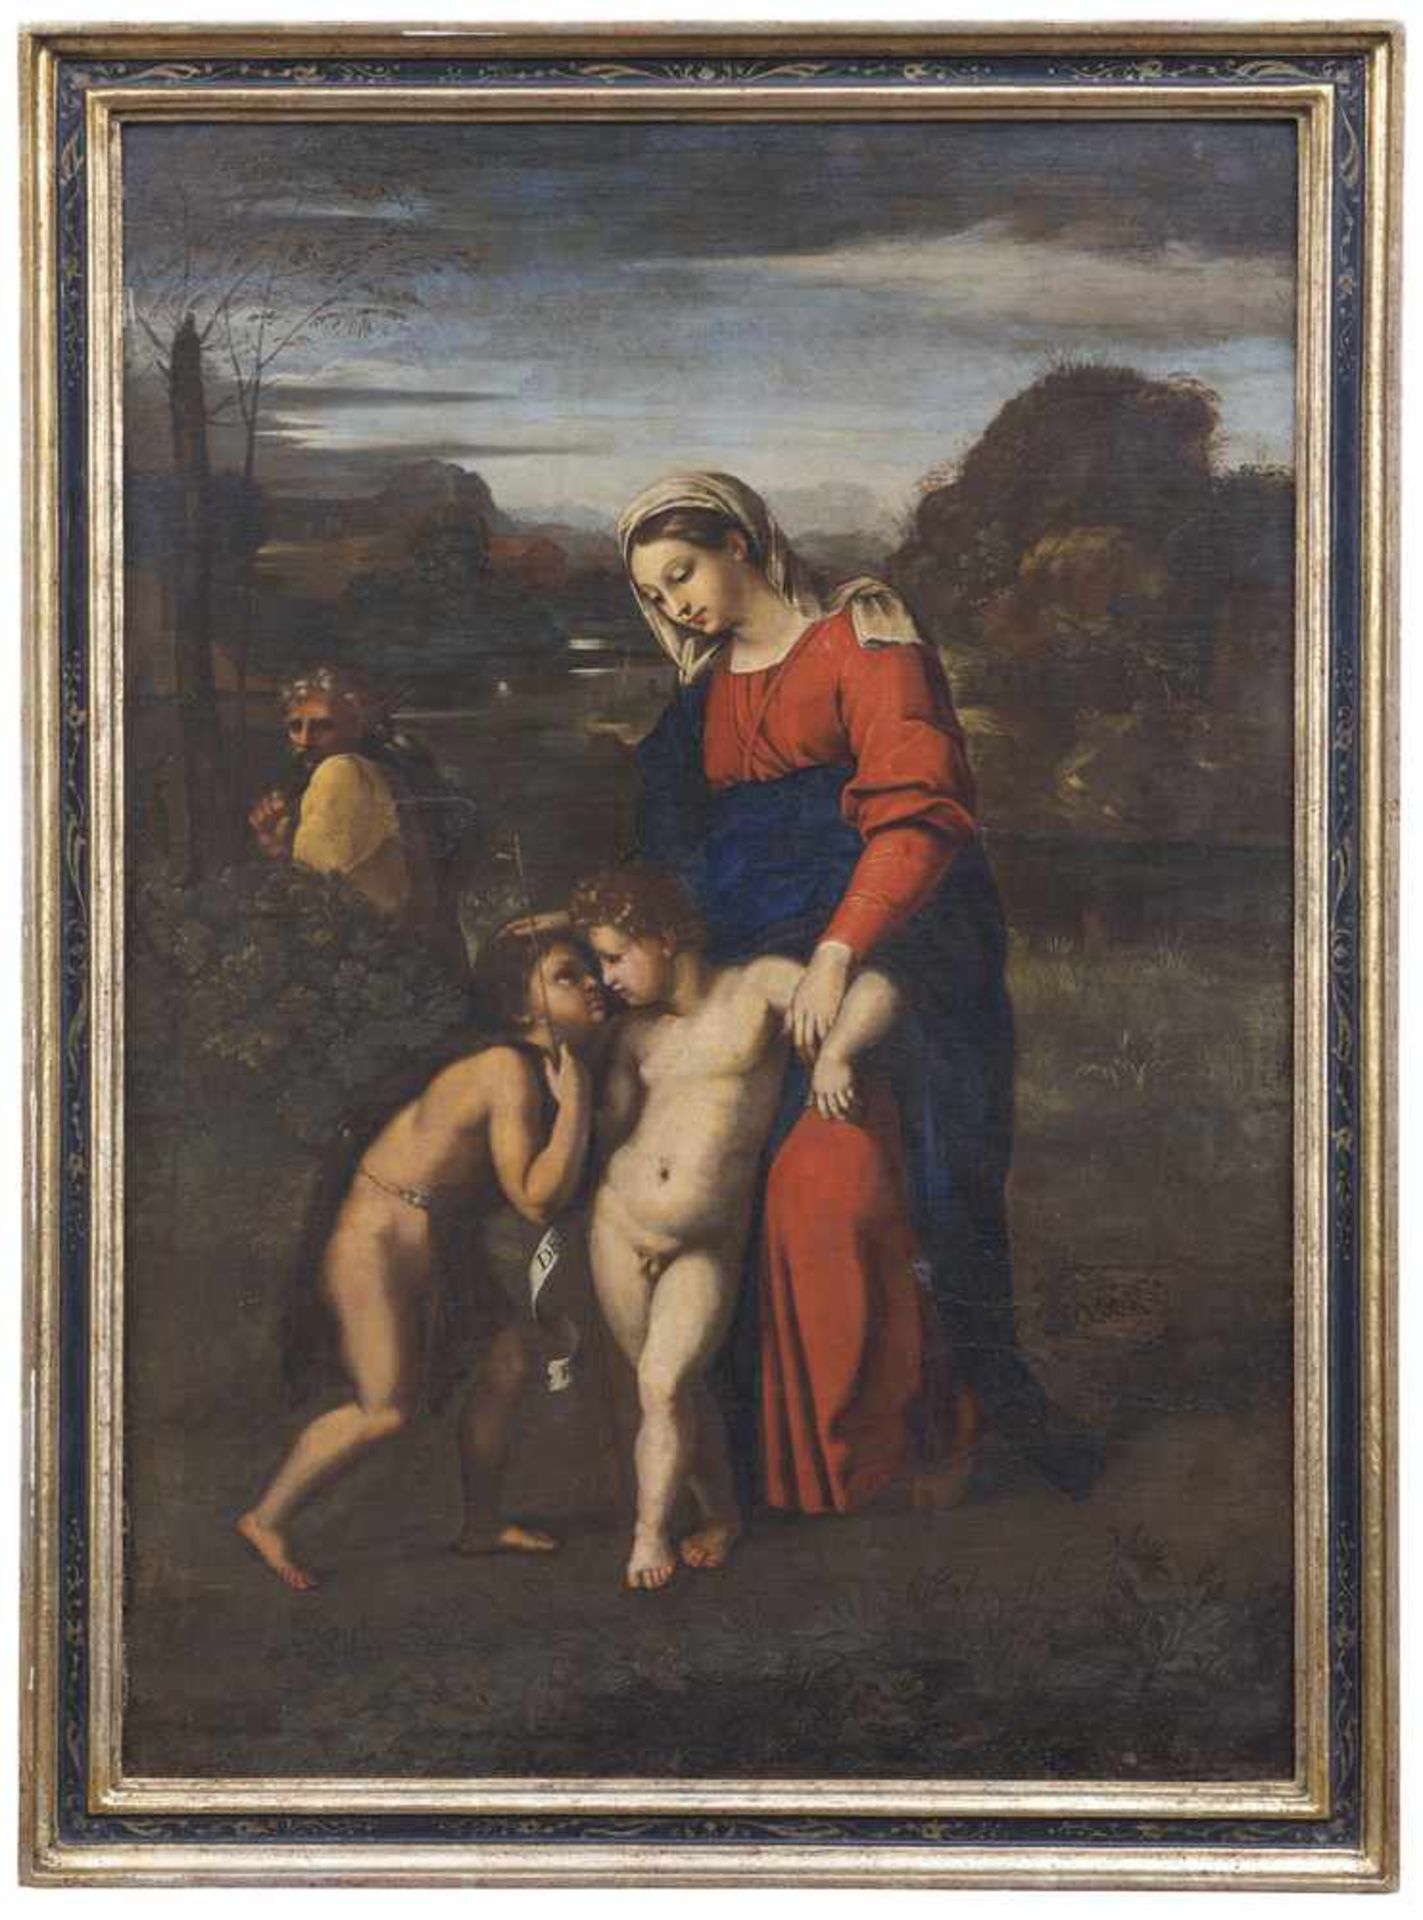 Santi, Raffaello (nach)Urbino 1483 - Rom 152093 x 66 cmDie Madonna del Passeggio. Öl/Lwd./Lwd.